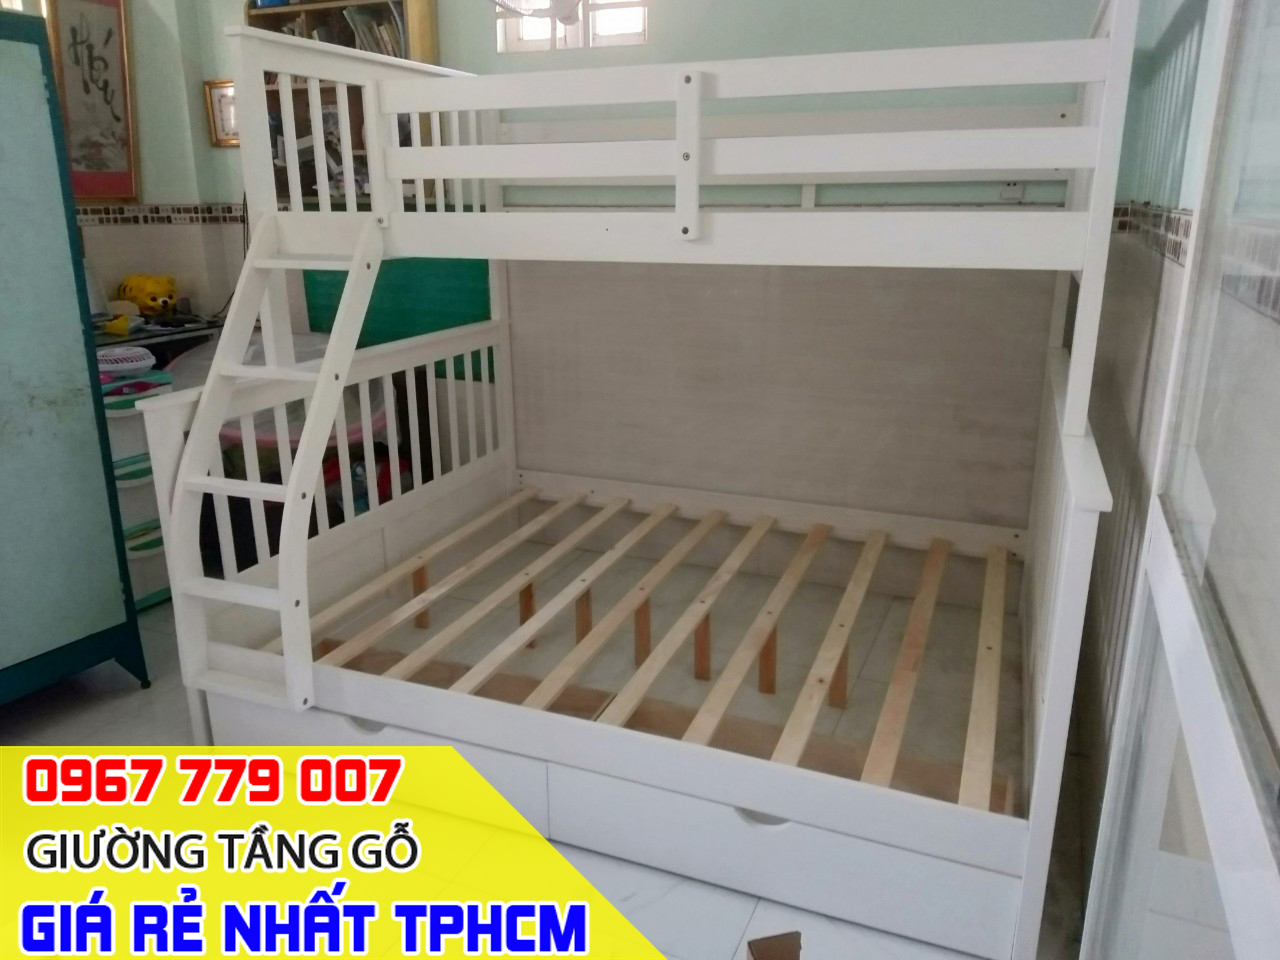 HOT - Các mẫu giường tầng đẹp ráp thực tế tại nhà khách đặt mua TPHCM 09-2023